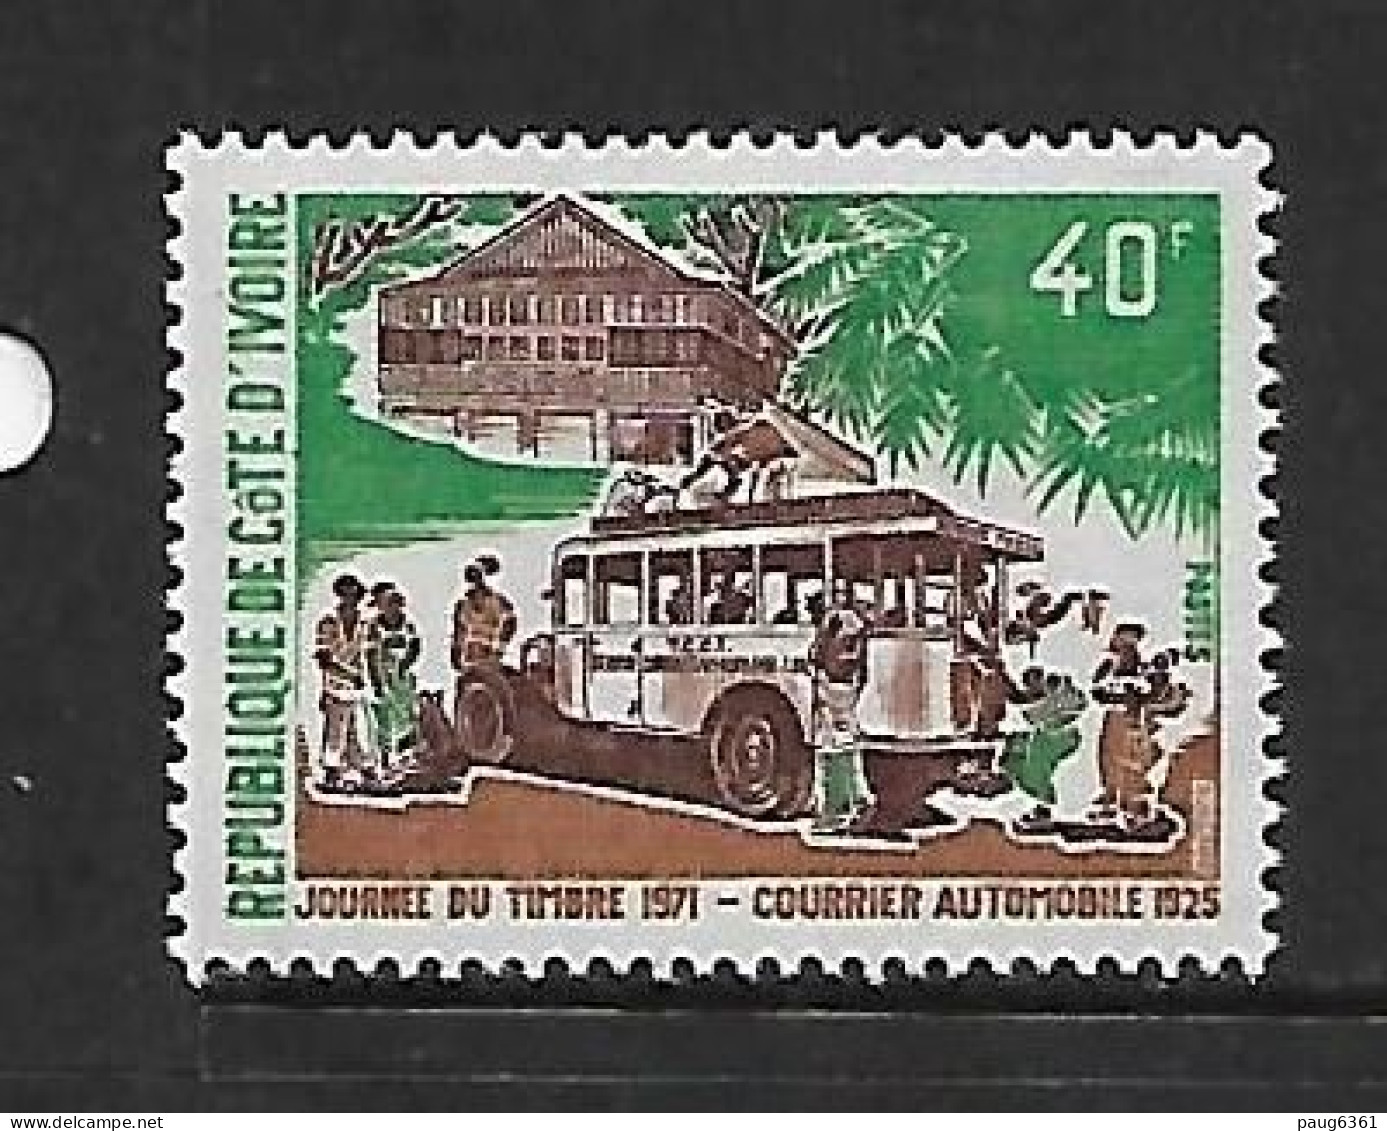 COTE D'IVOIRE 1971  JOURNEE DU TIMBRE-COURRIER AUTOMOBILE  YVERT N°311   NEUF MNH** - Bus